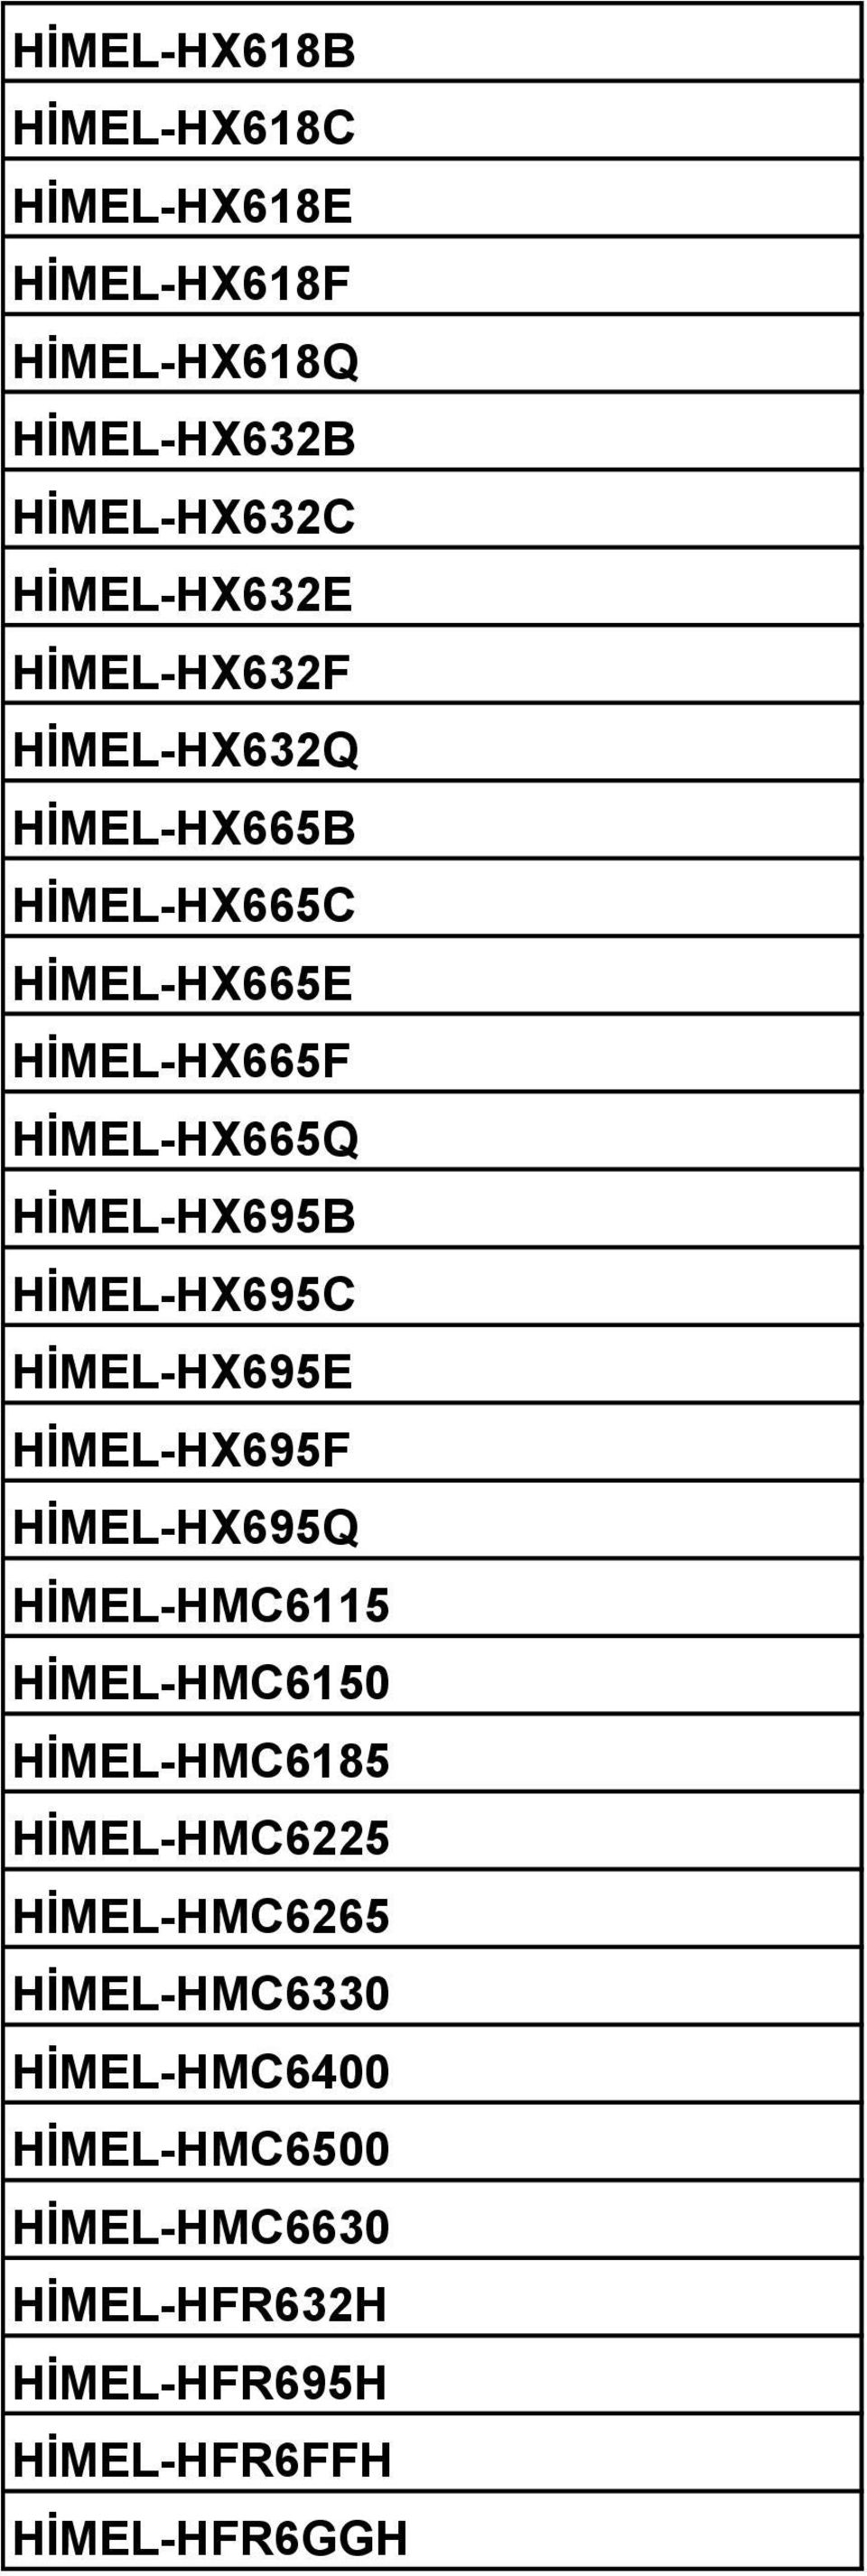 HİMEL-HX695C HİMEL-HX695E HİMEL-HX695F HİMEL-HX695Q HİMEL-HMC6115 HİMEL-HMC6150 HİMEL-HMC6185 HİMEL-HMC6225